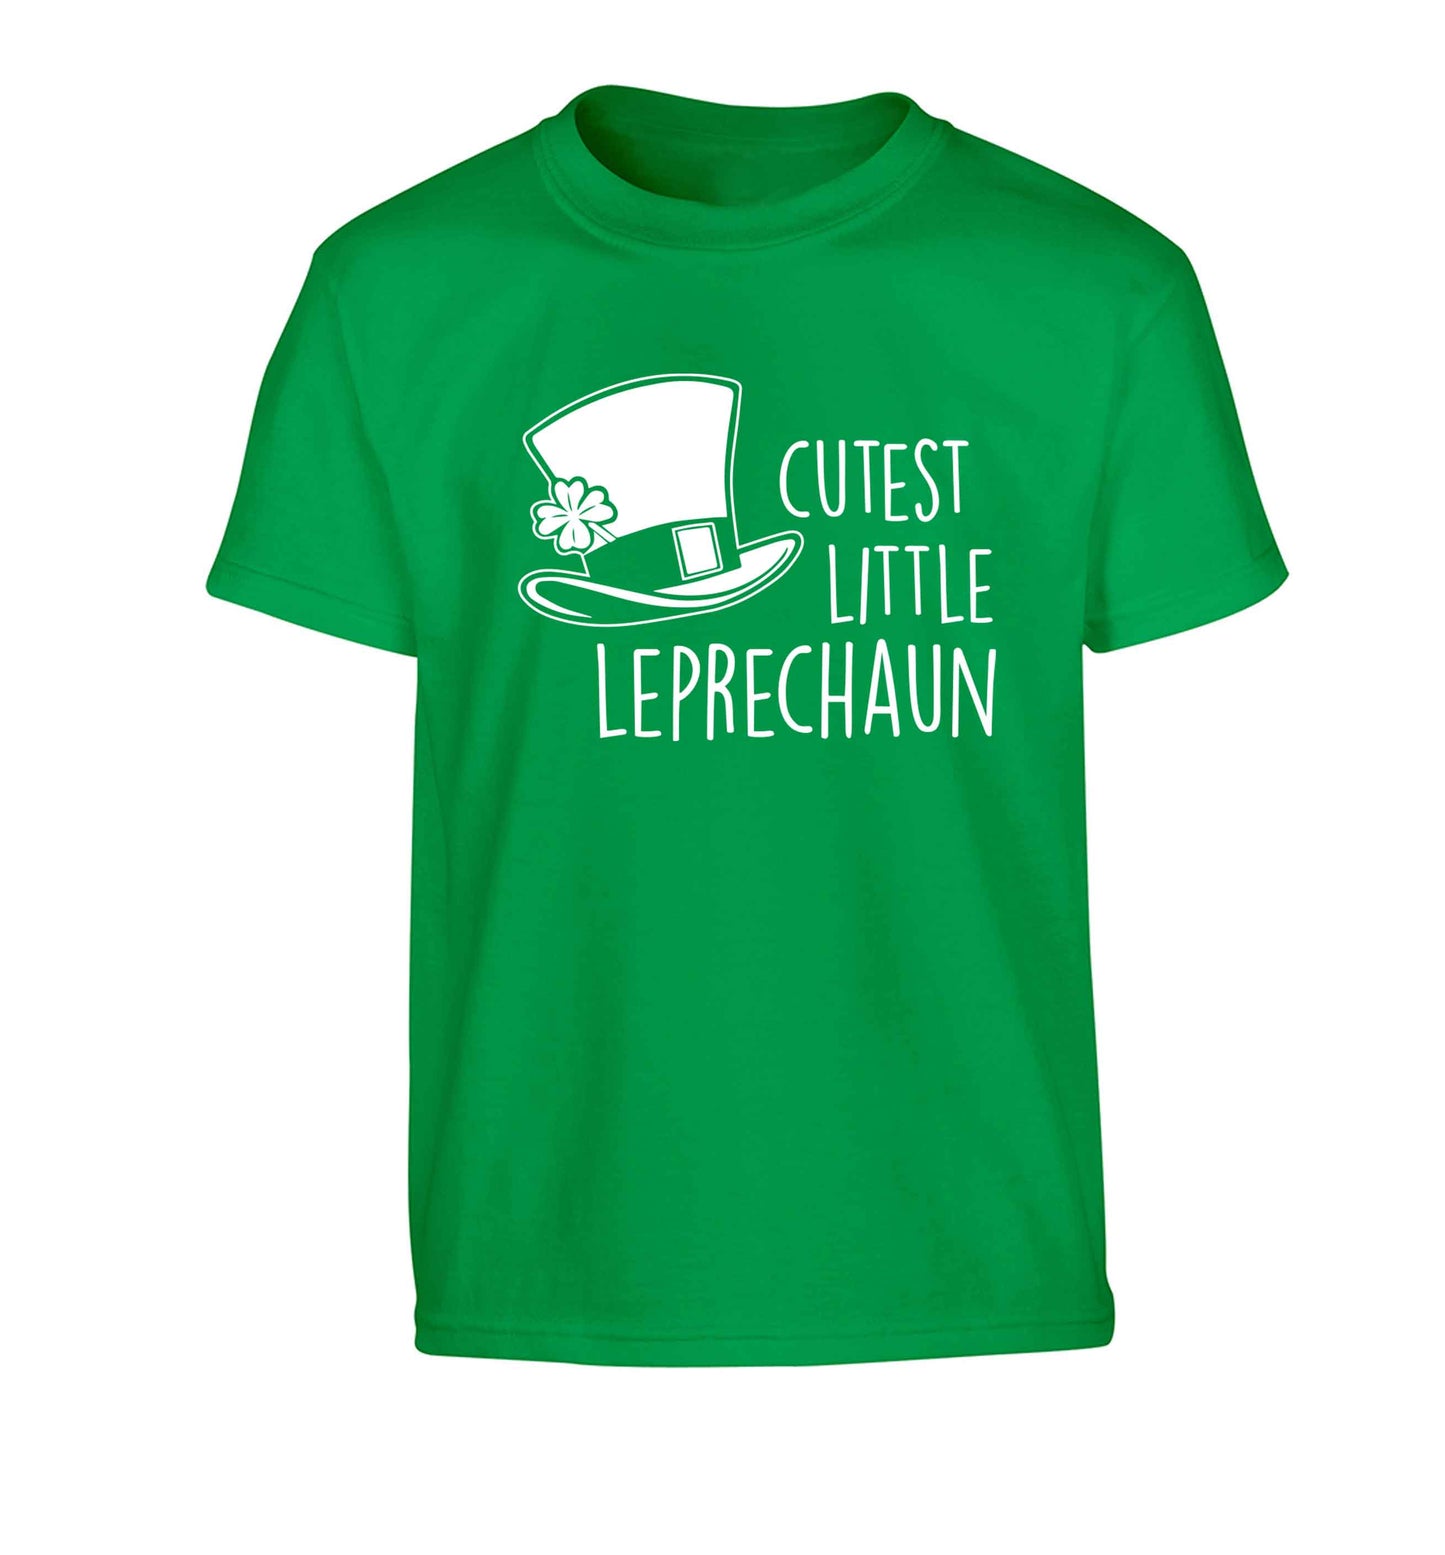 Cutest little leprechaun Children's green Tshirt 12-13 Years